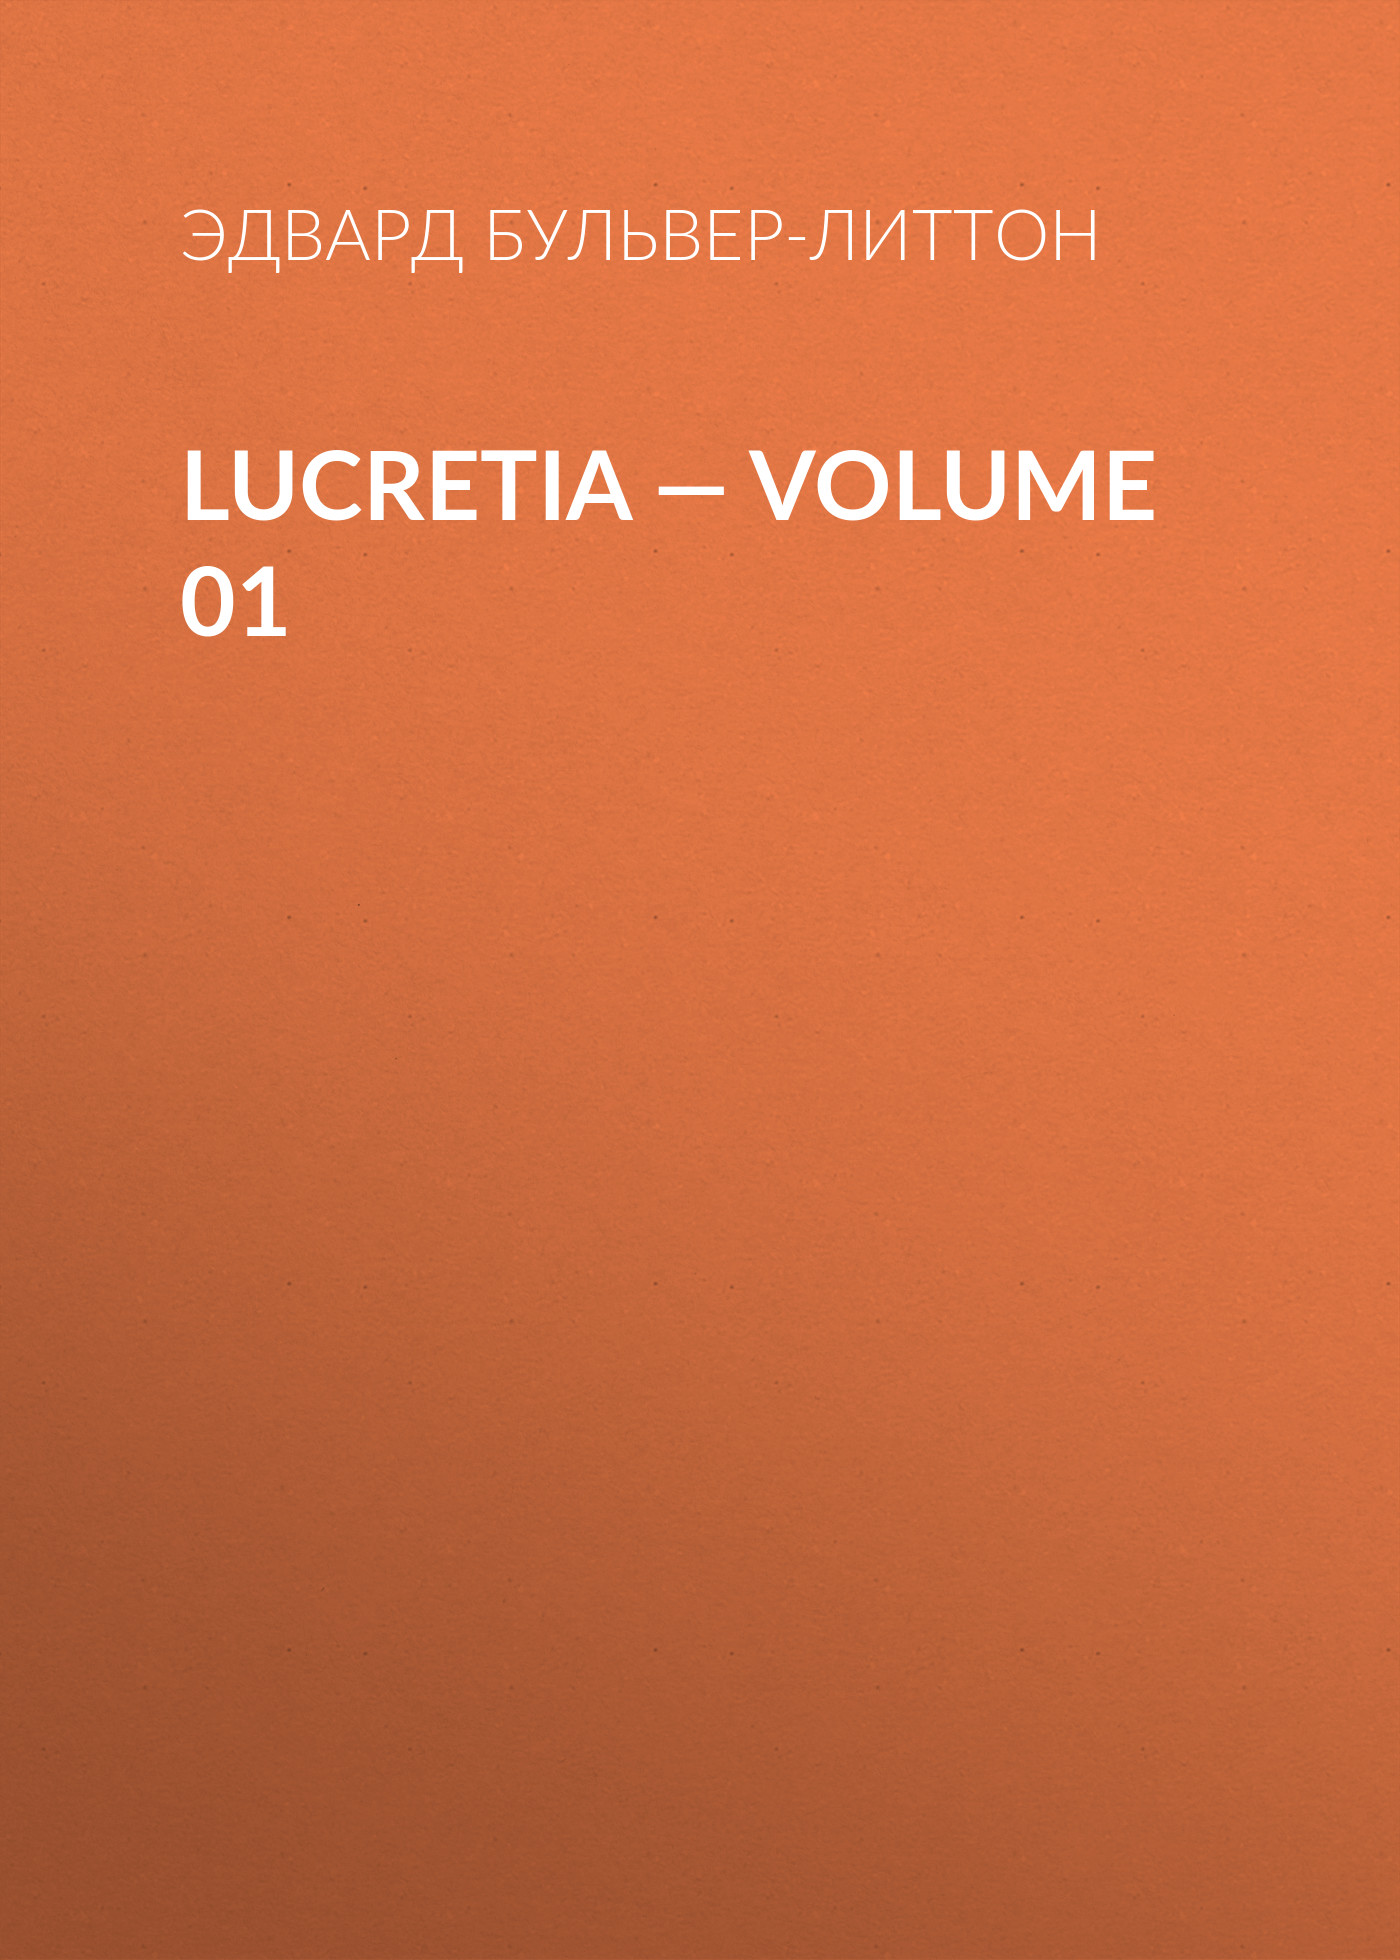 Книга Lucretia – Volume 01 из серии , созданная Эдвард Бульвер-Литтон, может относится к жанру Литература 19 века, Зарубежные детективы. Стоимость электронной книги Lucretia – Volume 01 с идентификатором 35009025 составляет 0 руб.